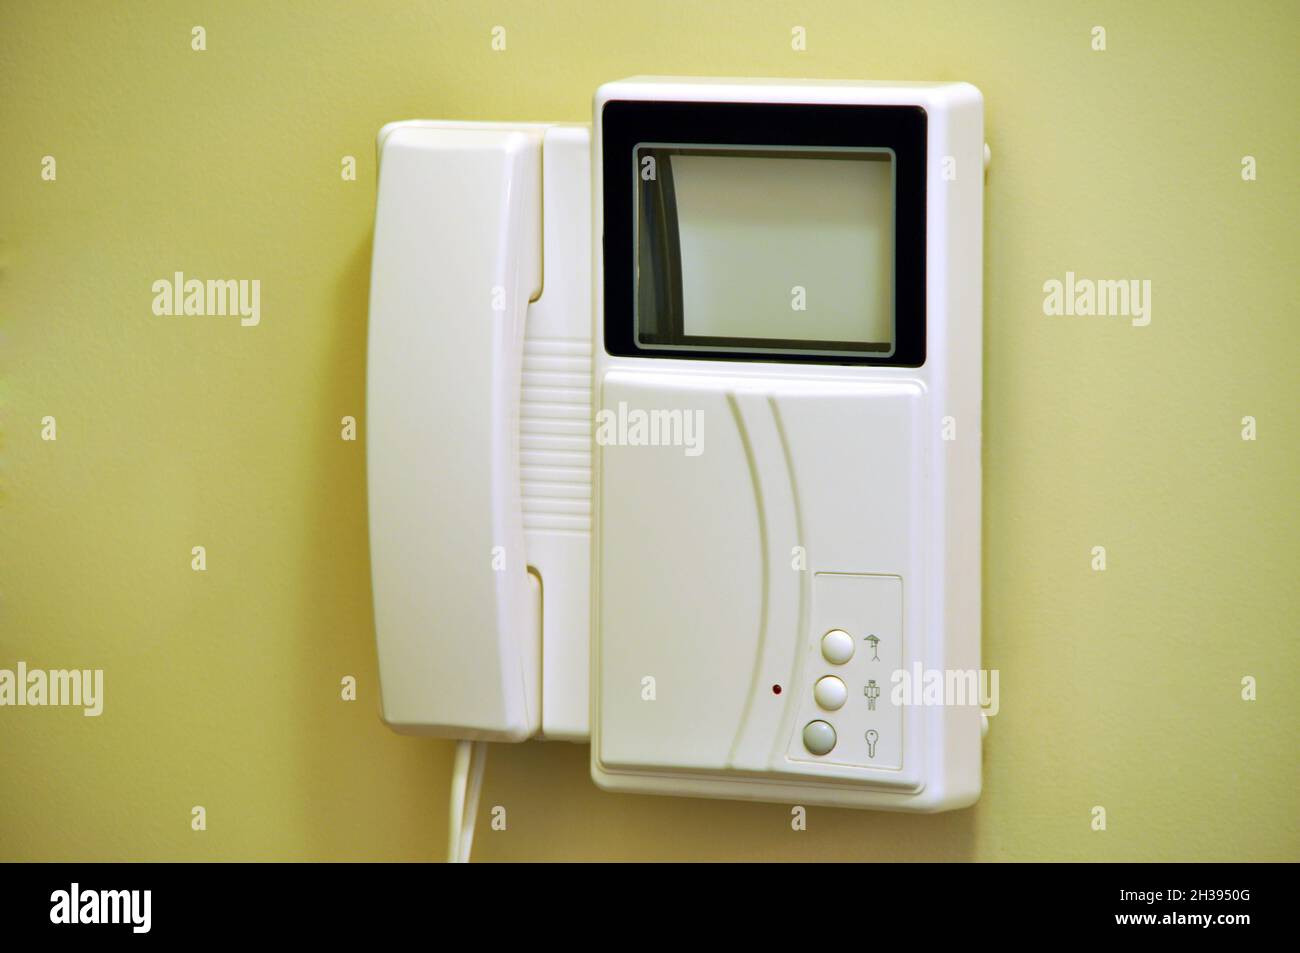 Moderne Video-Gegensprechanlage, die an der Wand am Eingang des  Mehrfamilienhauses oder Hauses hängt Stockfotografie - Alamy